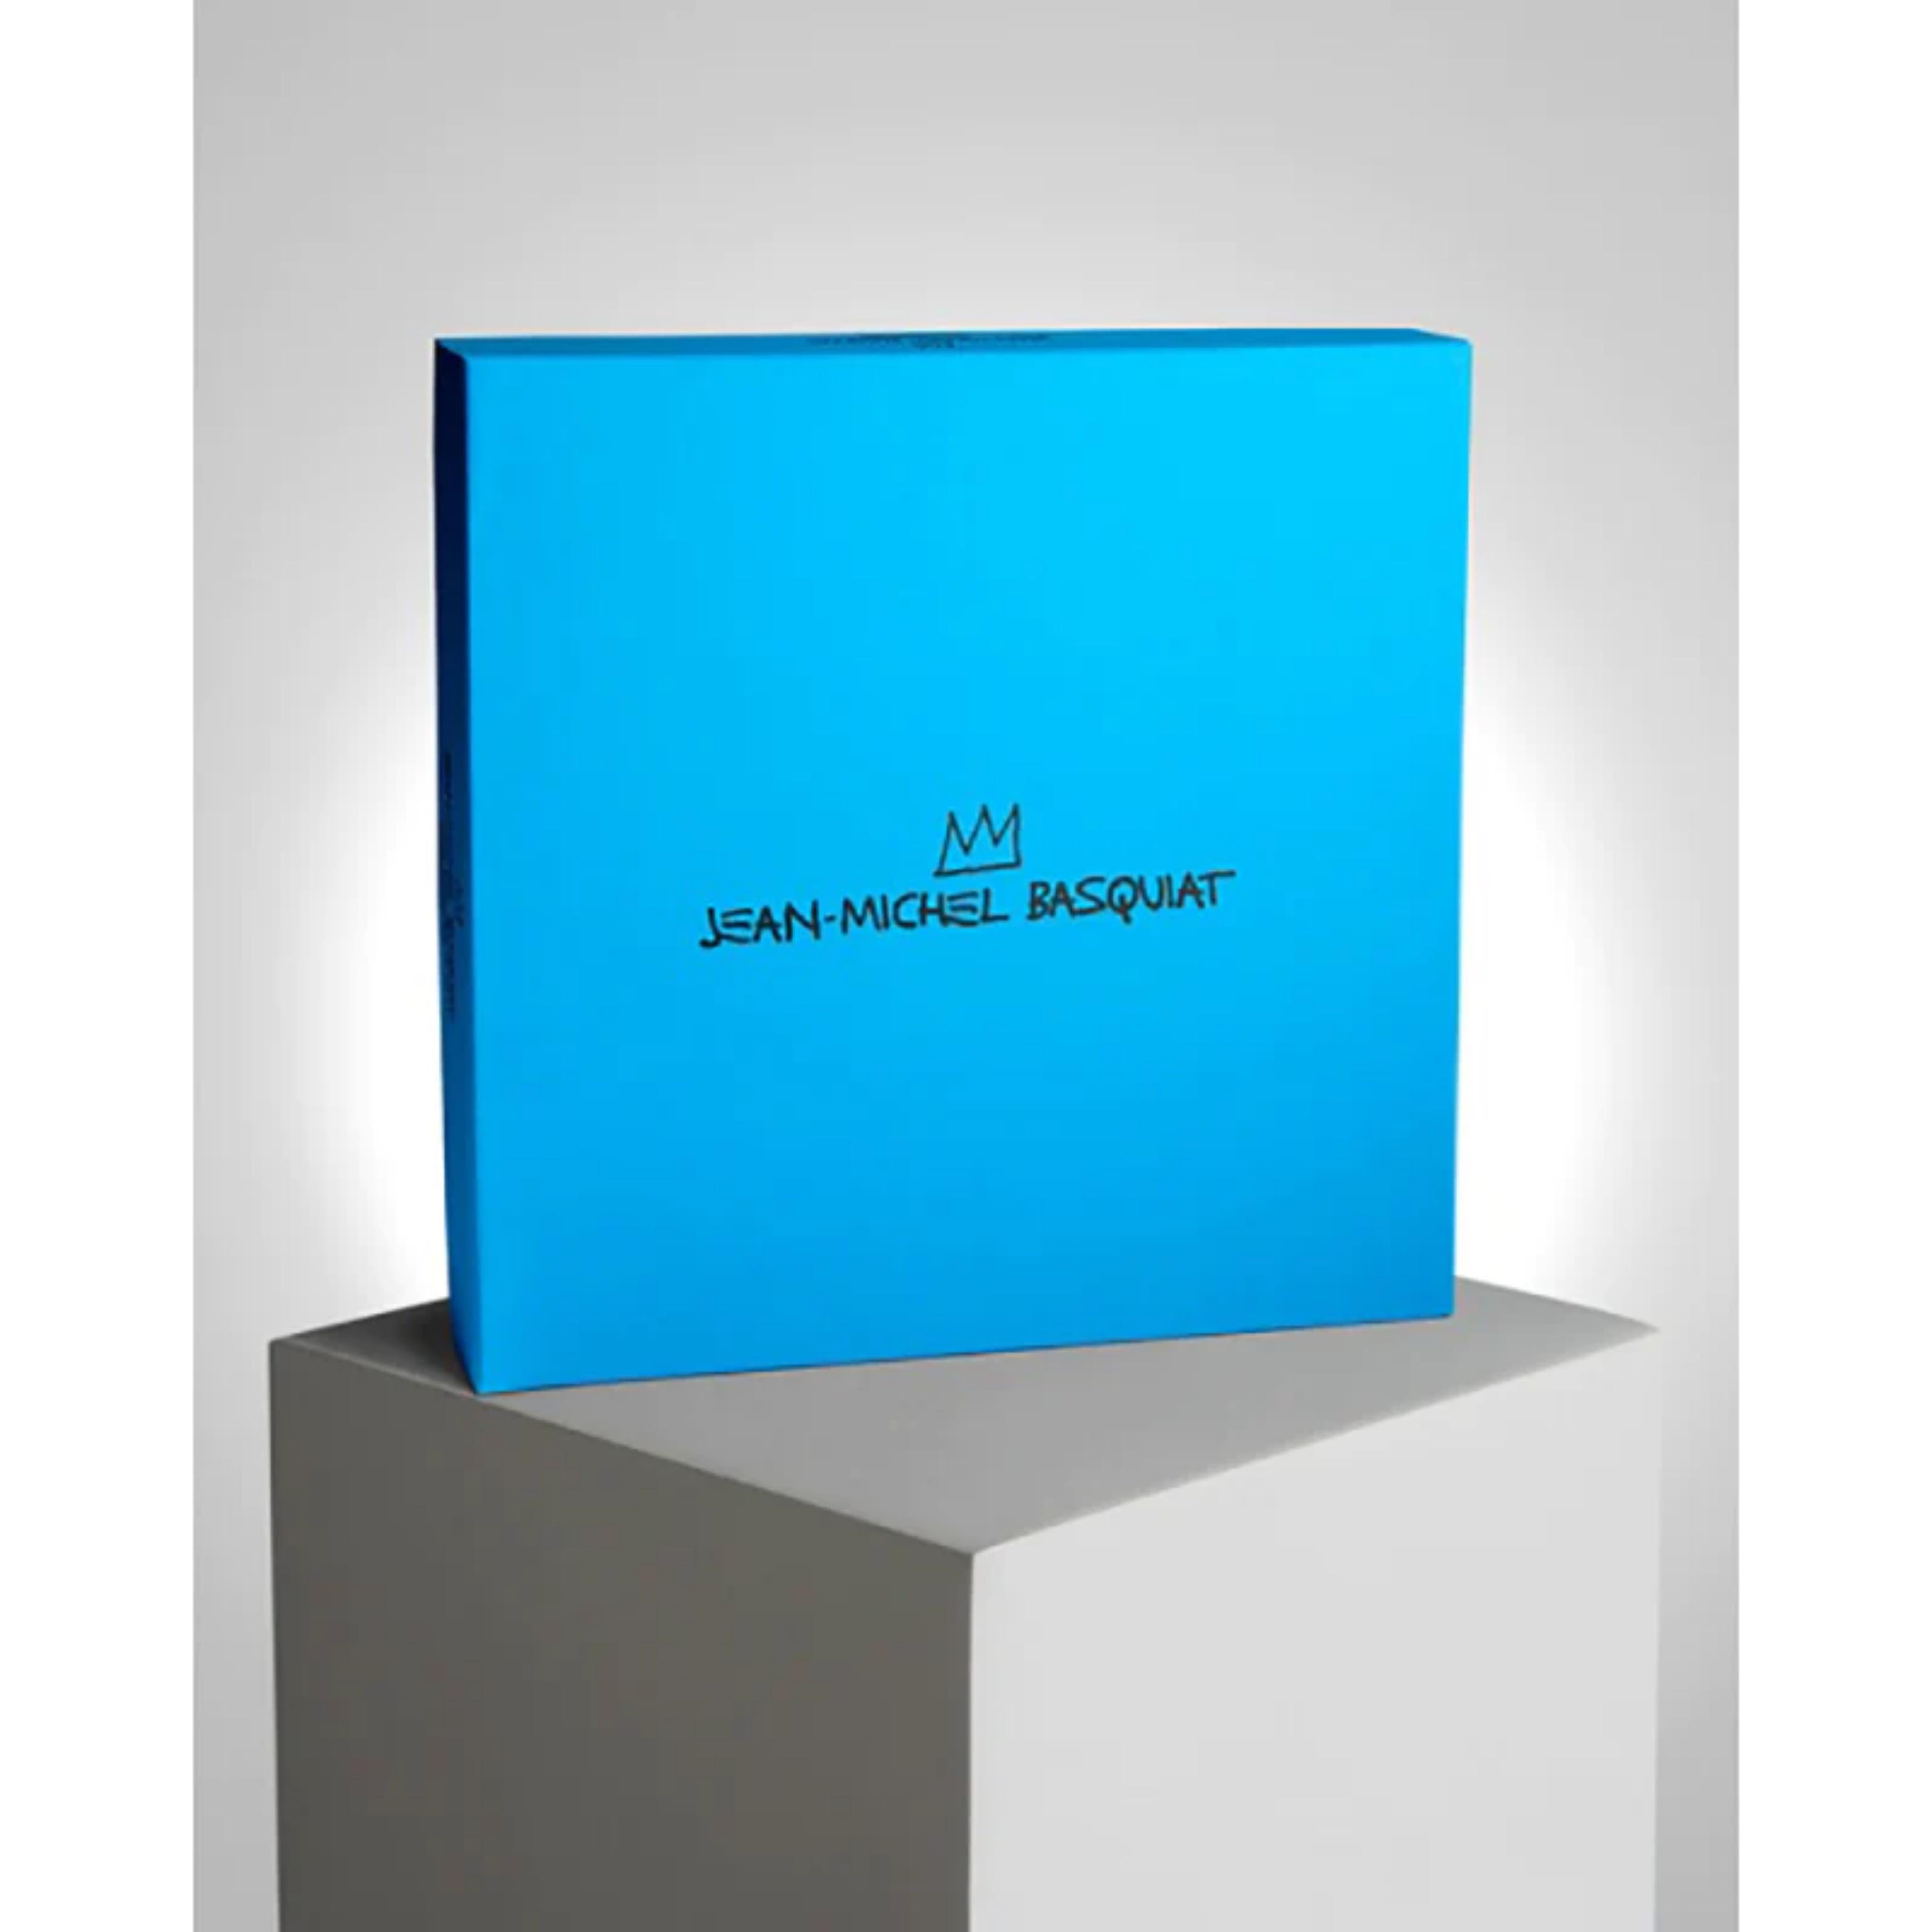 Jean-Michel Basquiat
Nachlassgenehmigter Porzellanteller in Schachtel, 2014
Porzellanteller in blauer Präsentationsbox mit Estate-Logo
Dieser Teller ist in ausgezeichnetem Zustand und wird in einer eleganten blauen Geschenkbox geliefert, die das